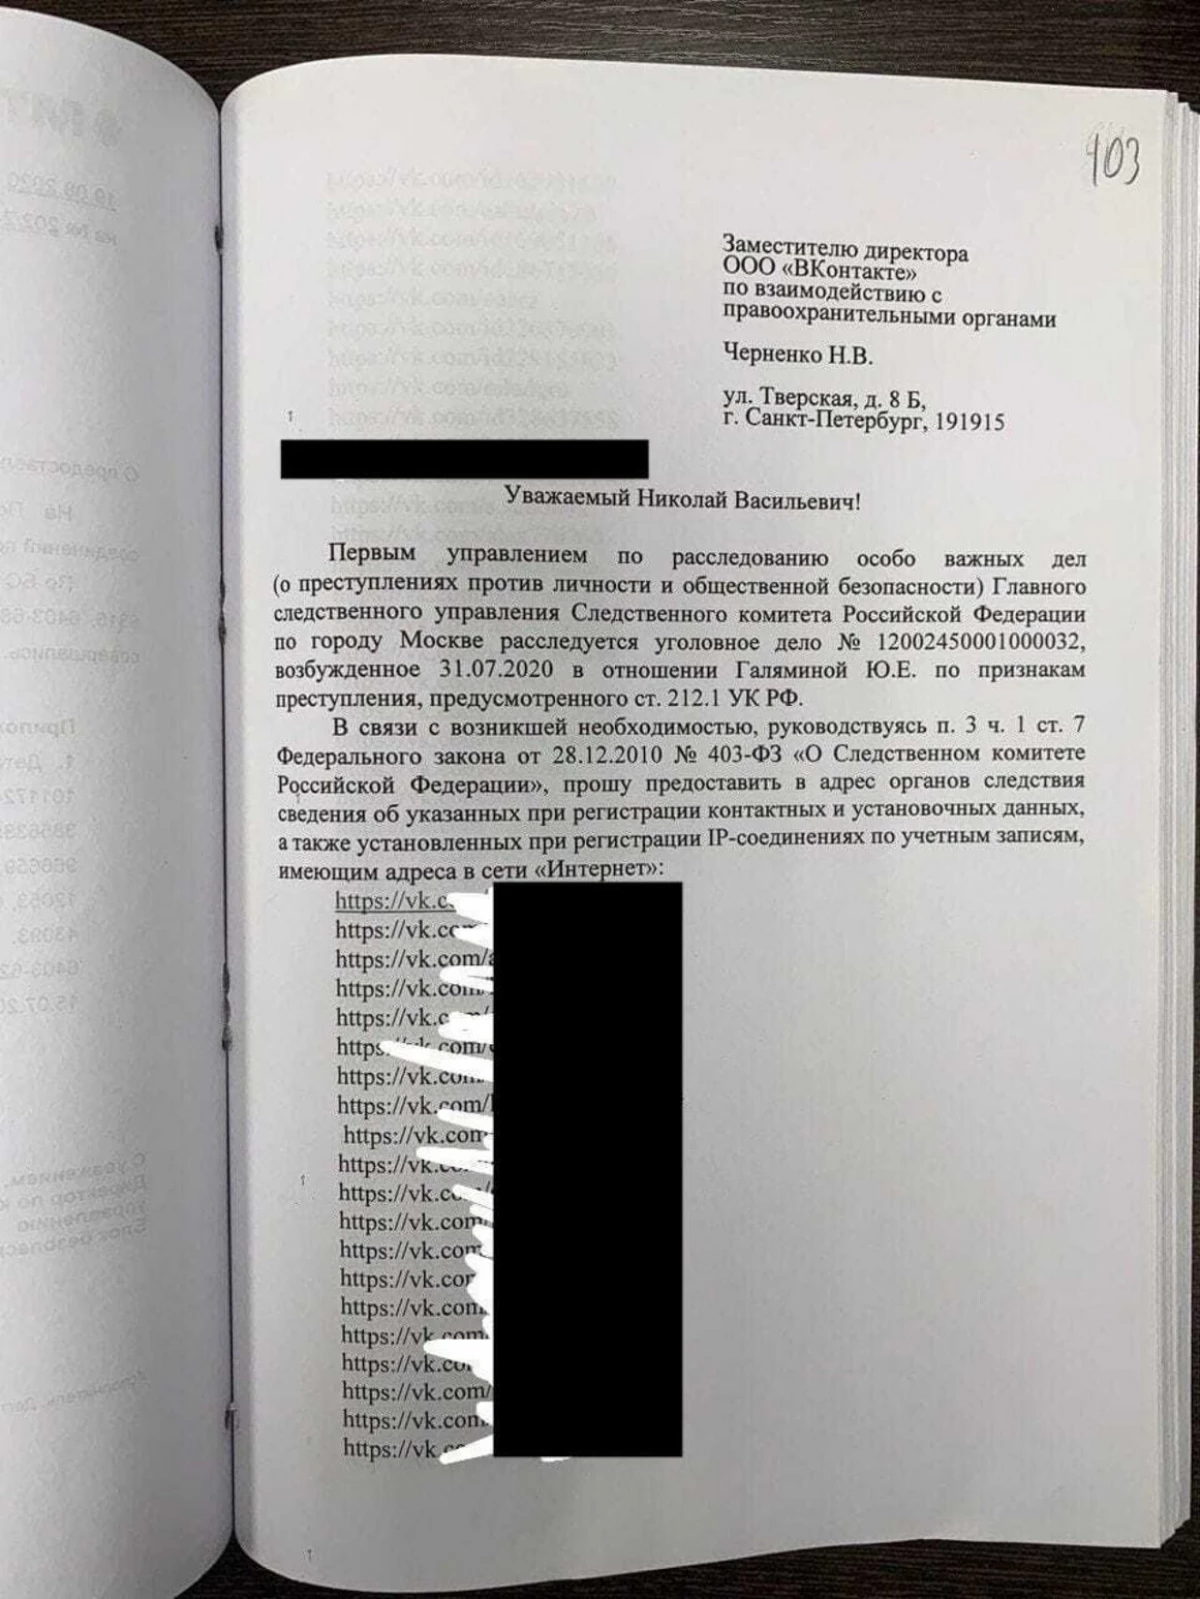 在吉爾曼副副書的情況下，有關於那些訪問她的頁面“vkontakte”的數據。社交網絡解釋瞭如何有可能 5552_2